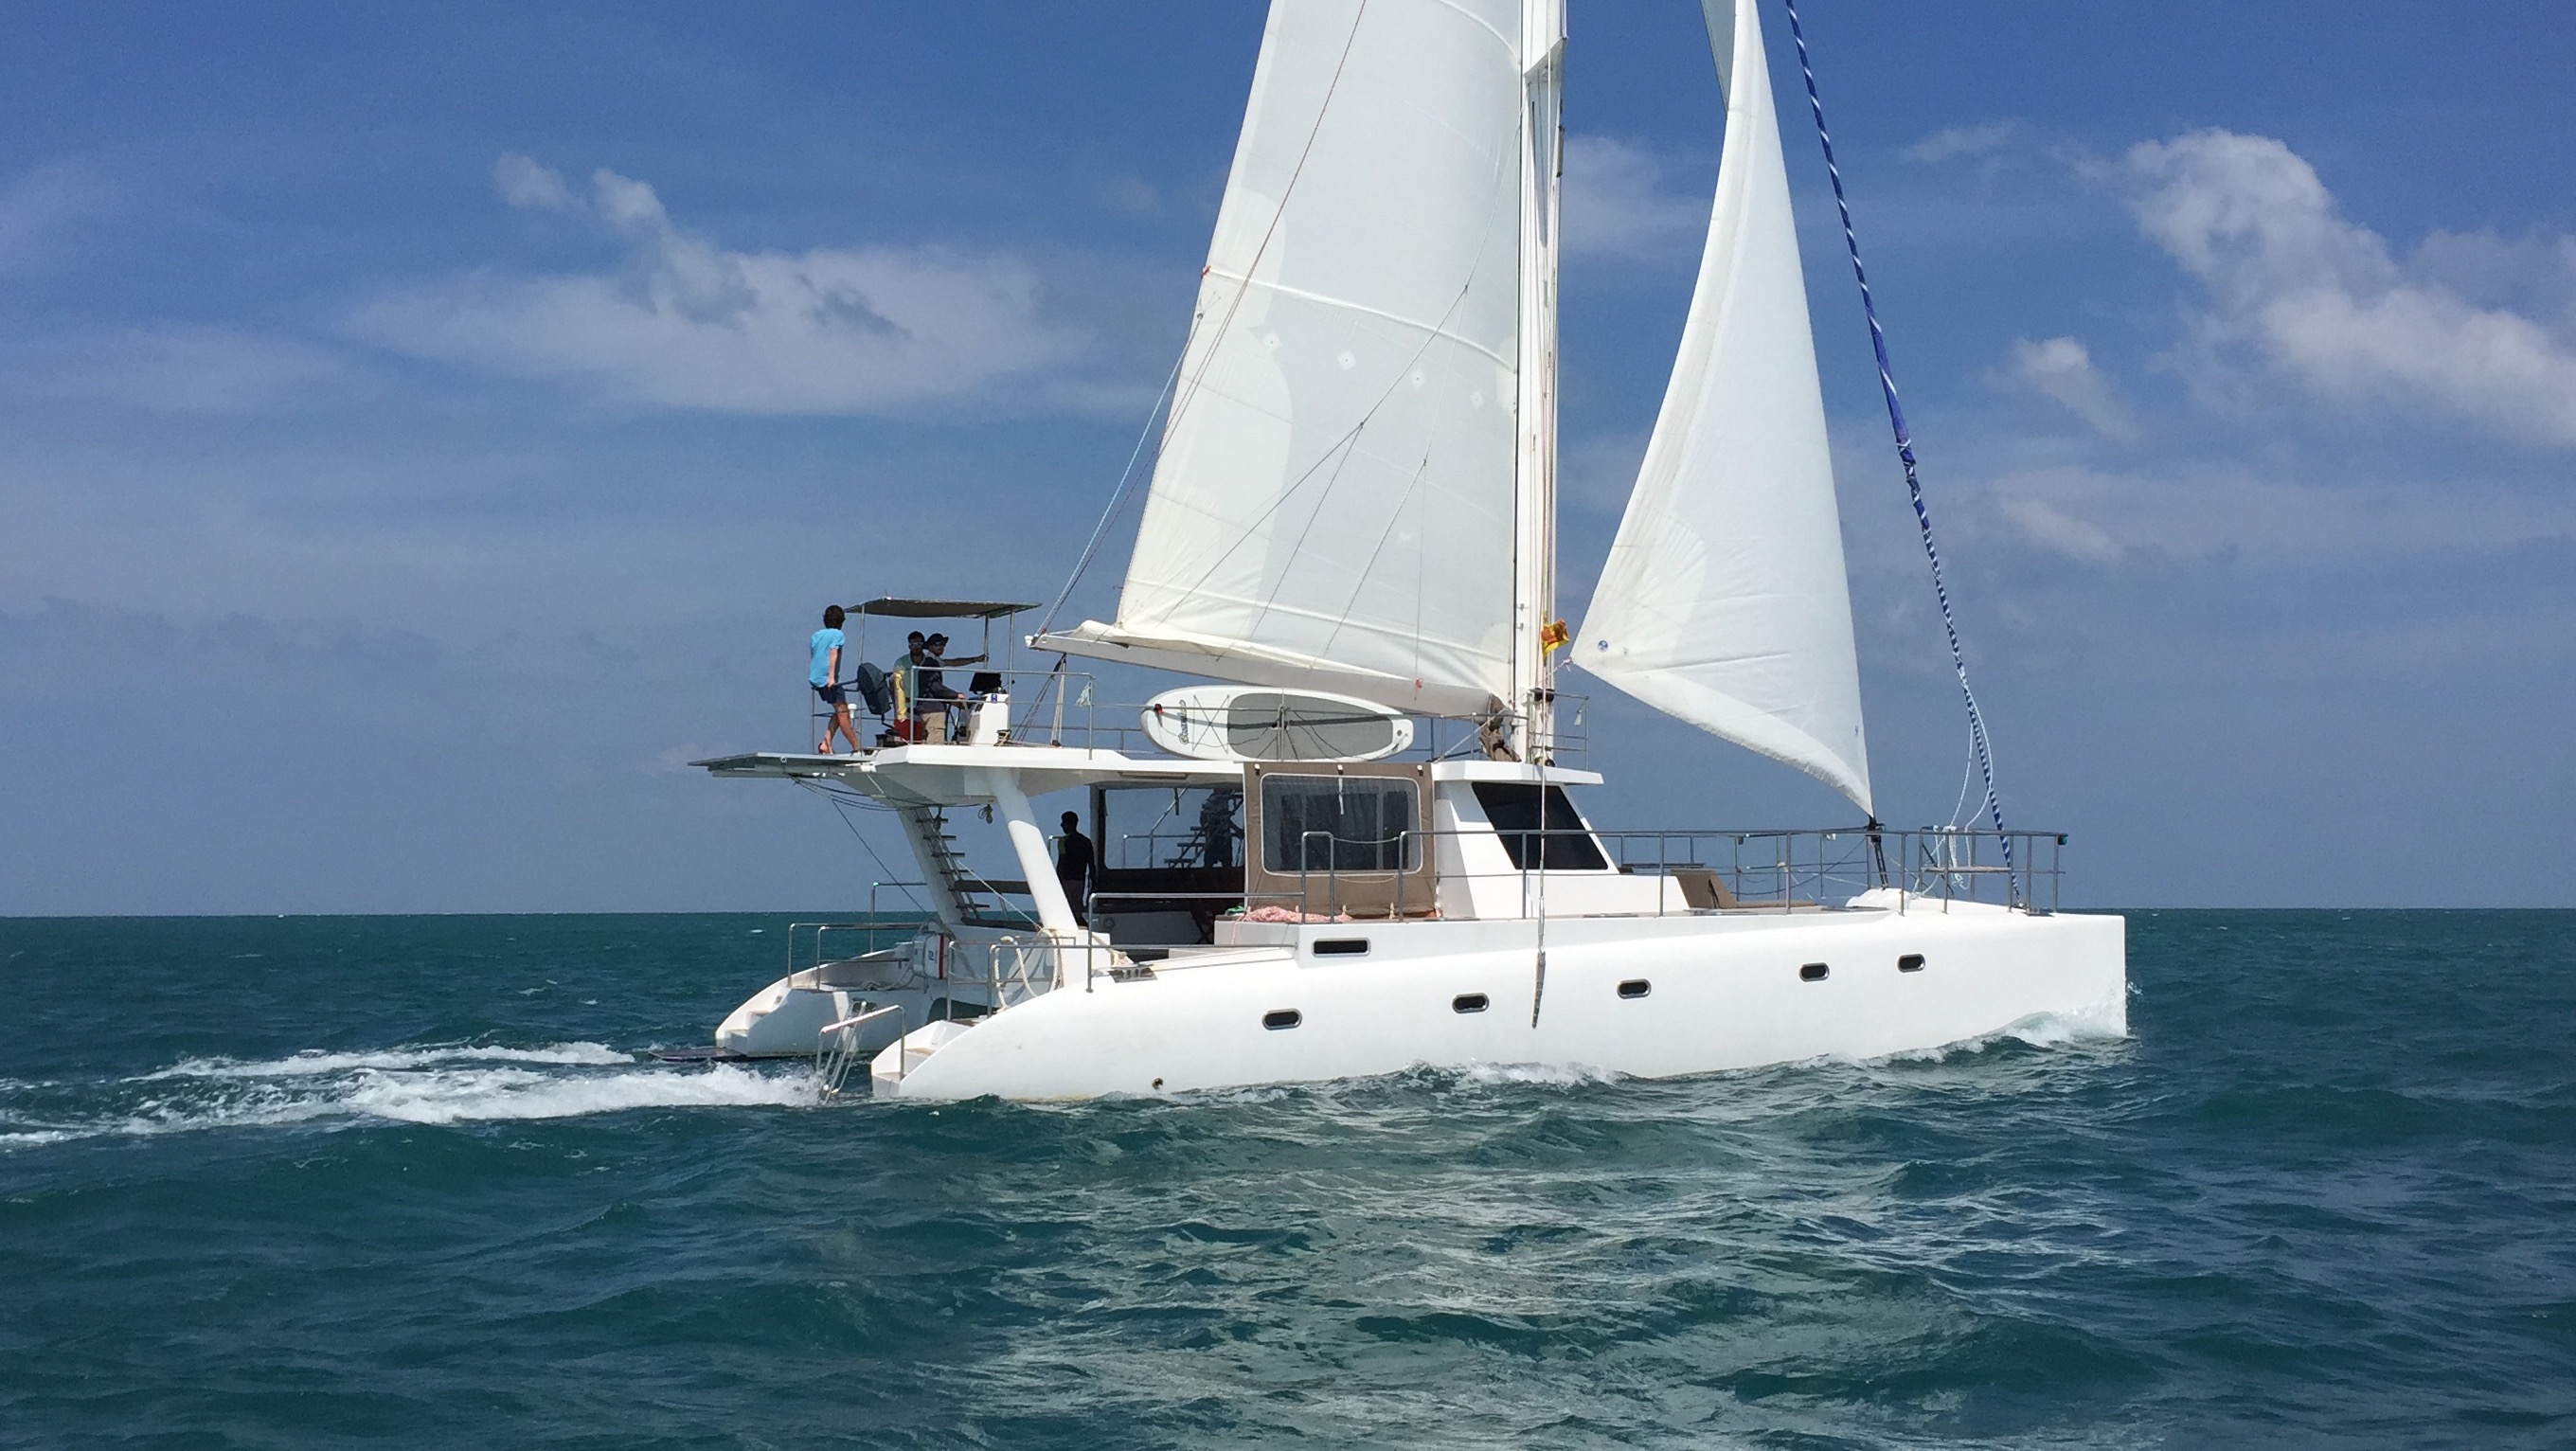 sail lanka yachting group